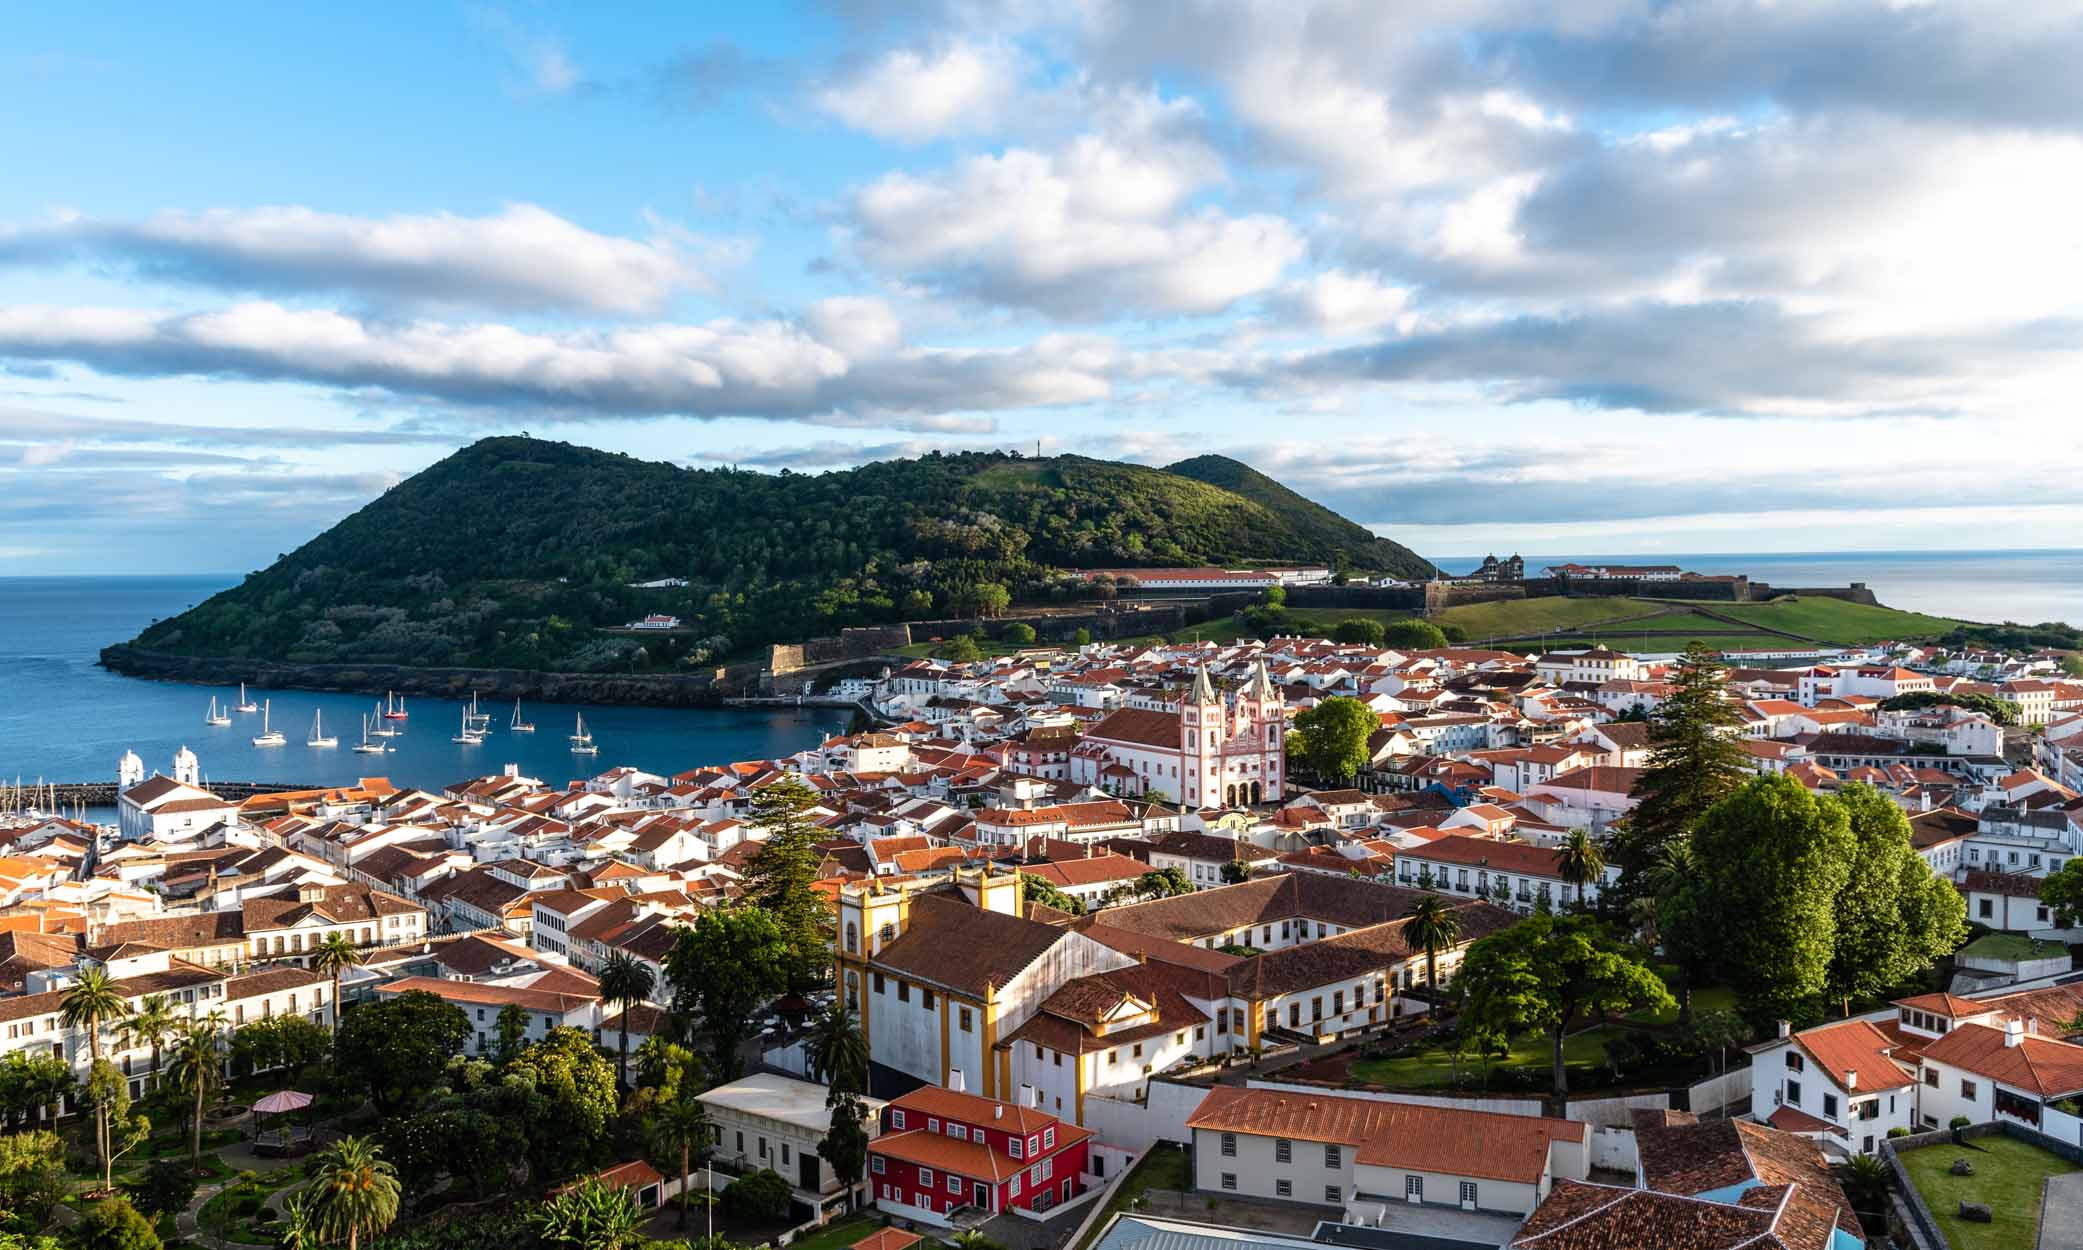 التأشيرة الذهبية البرتغالية هي طريق للحصول على الجنسية البرتغالية.